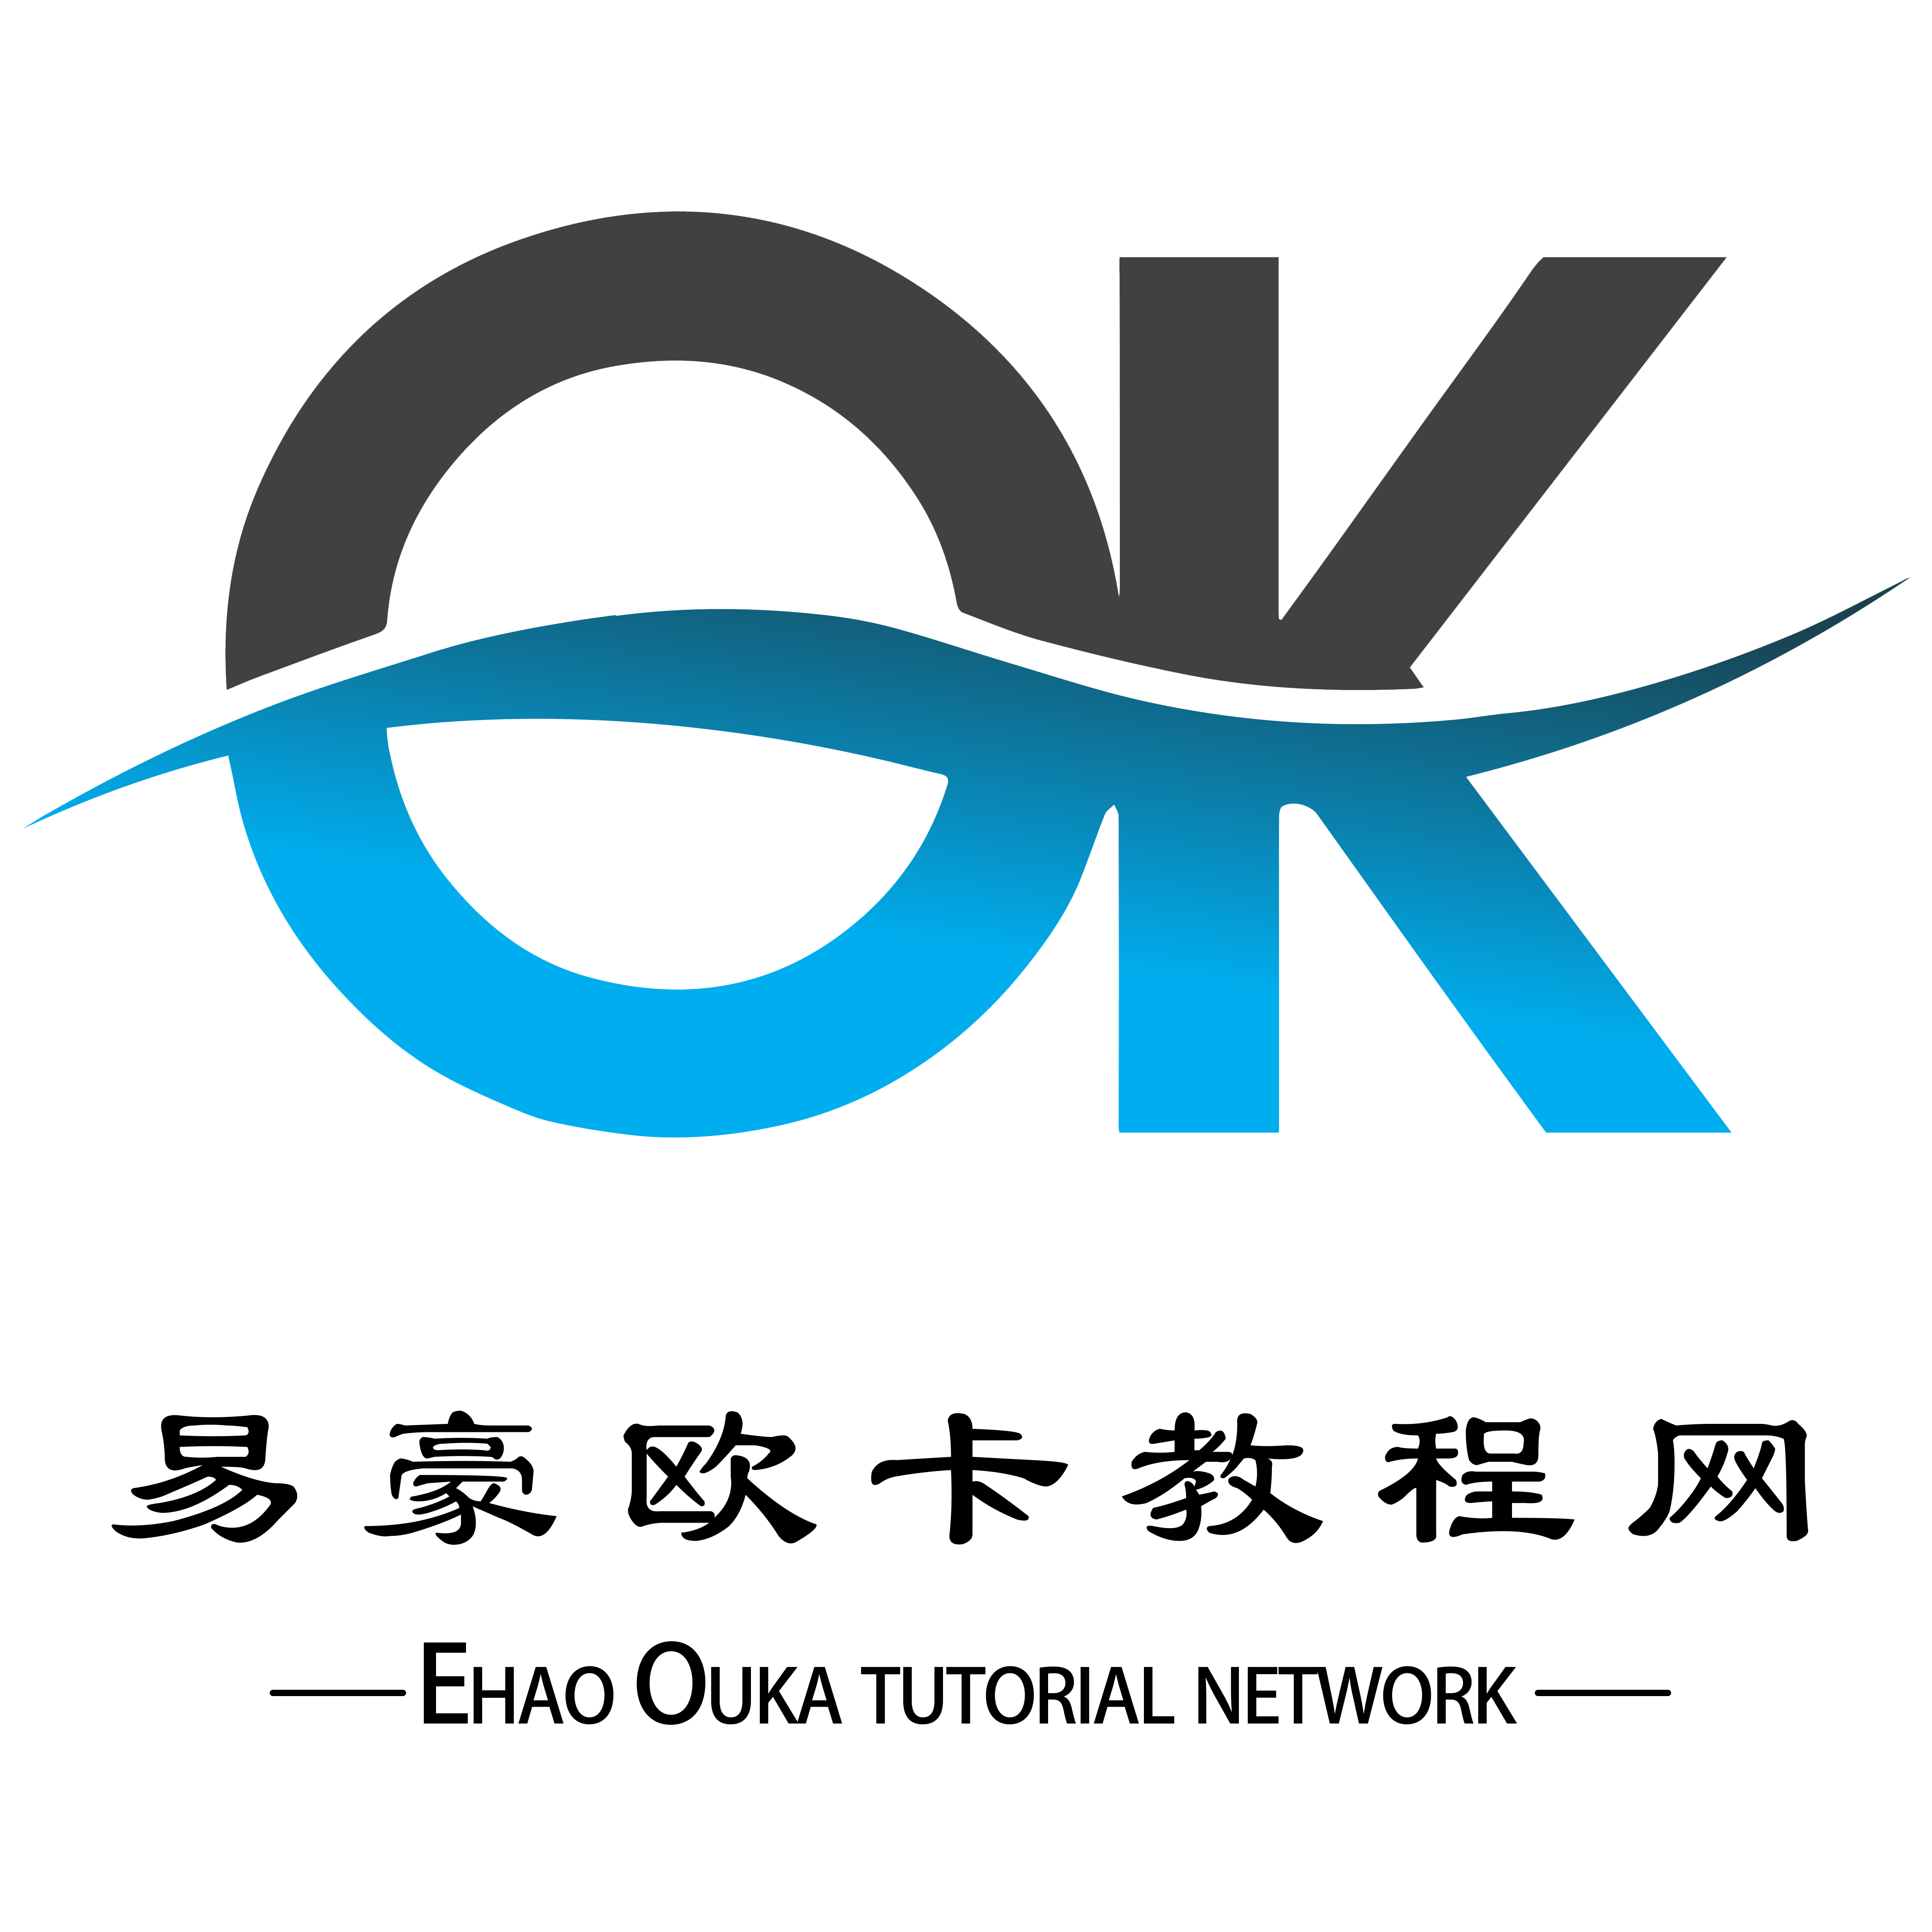 易豪欧卡教程网 - 提供欧卡美卡工具、教程支持！